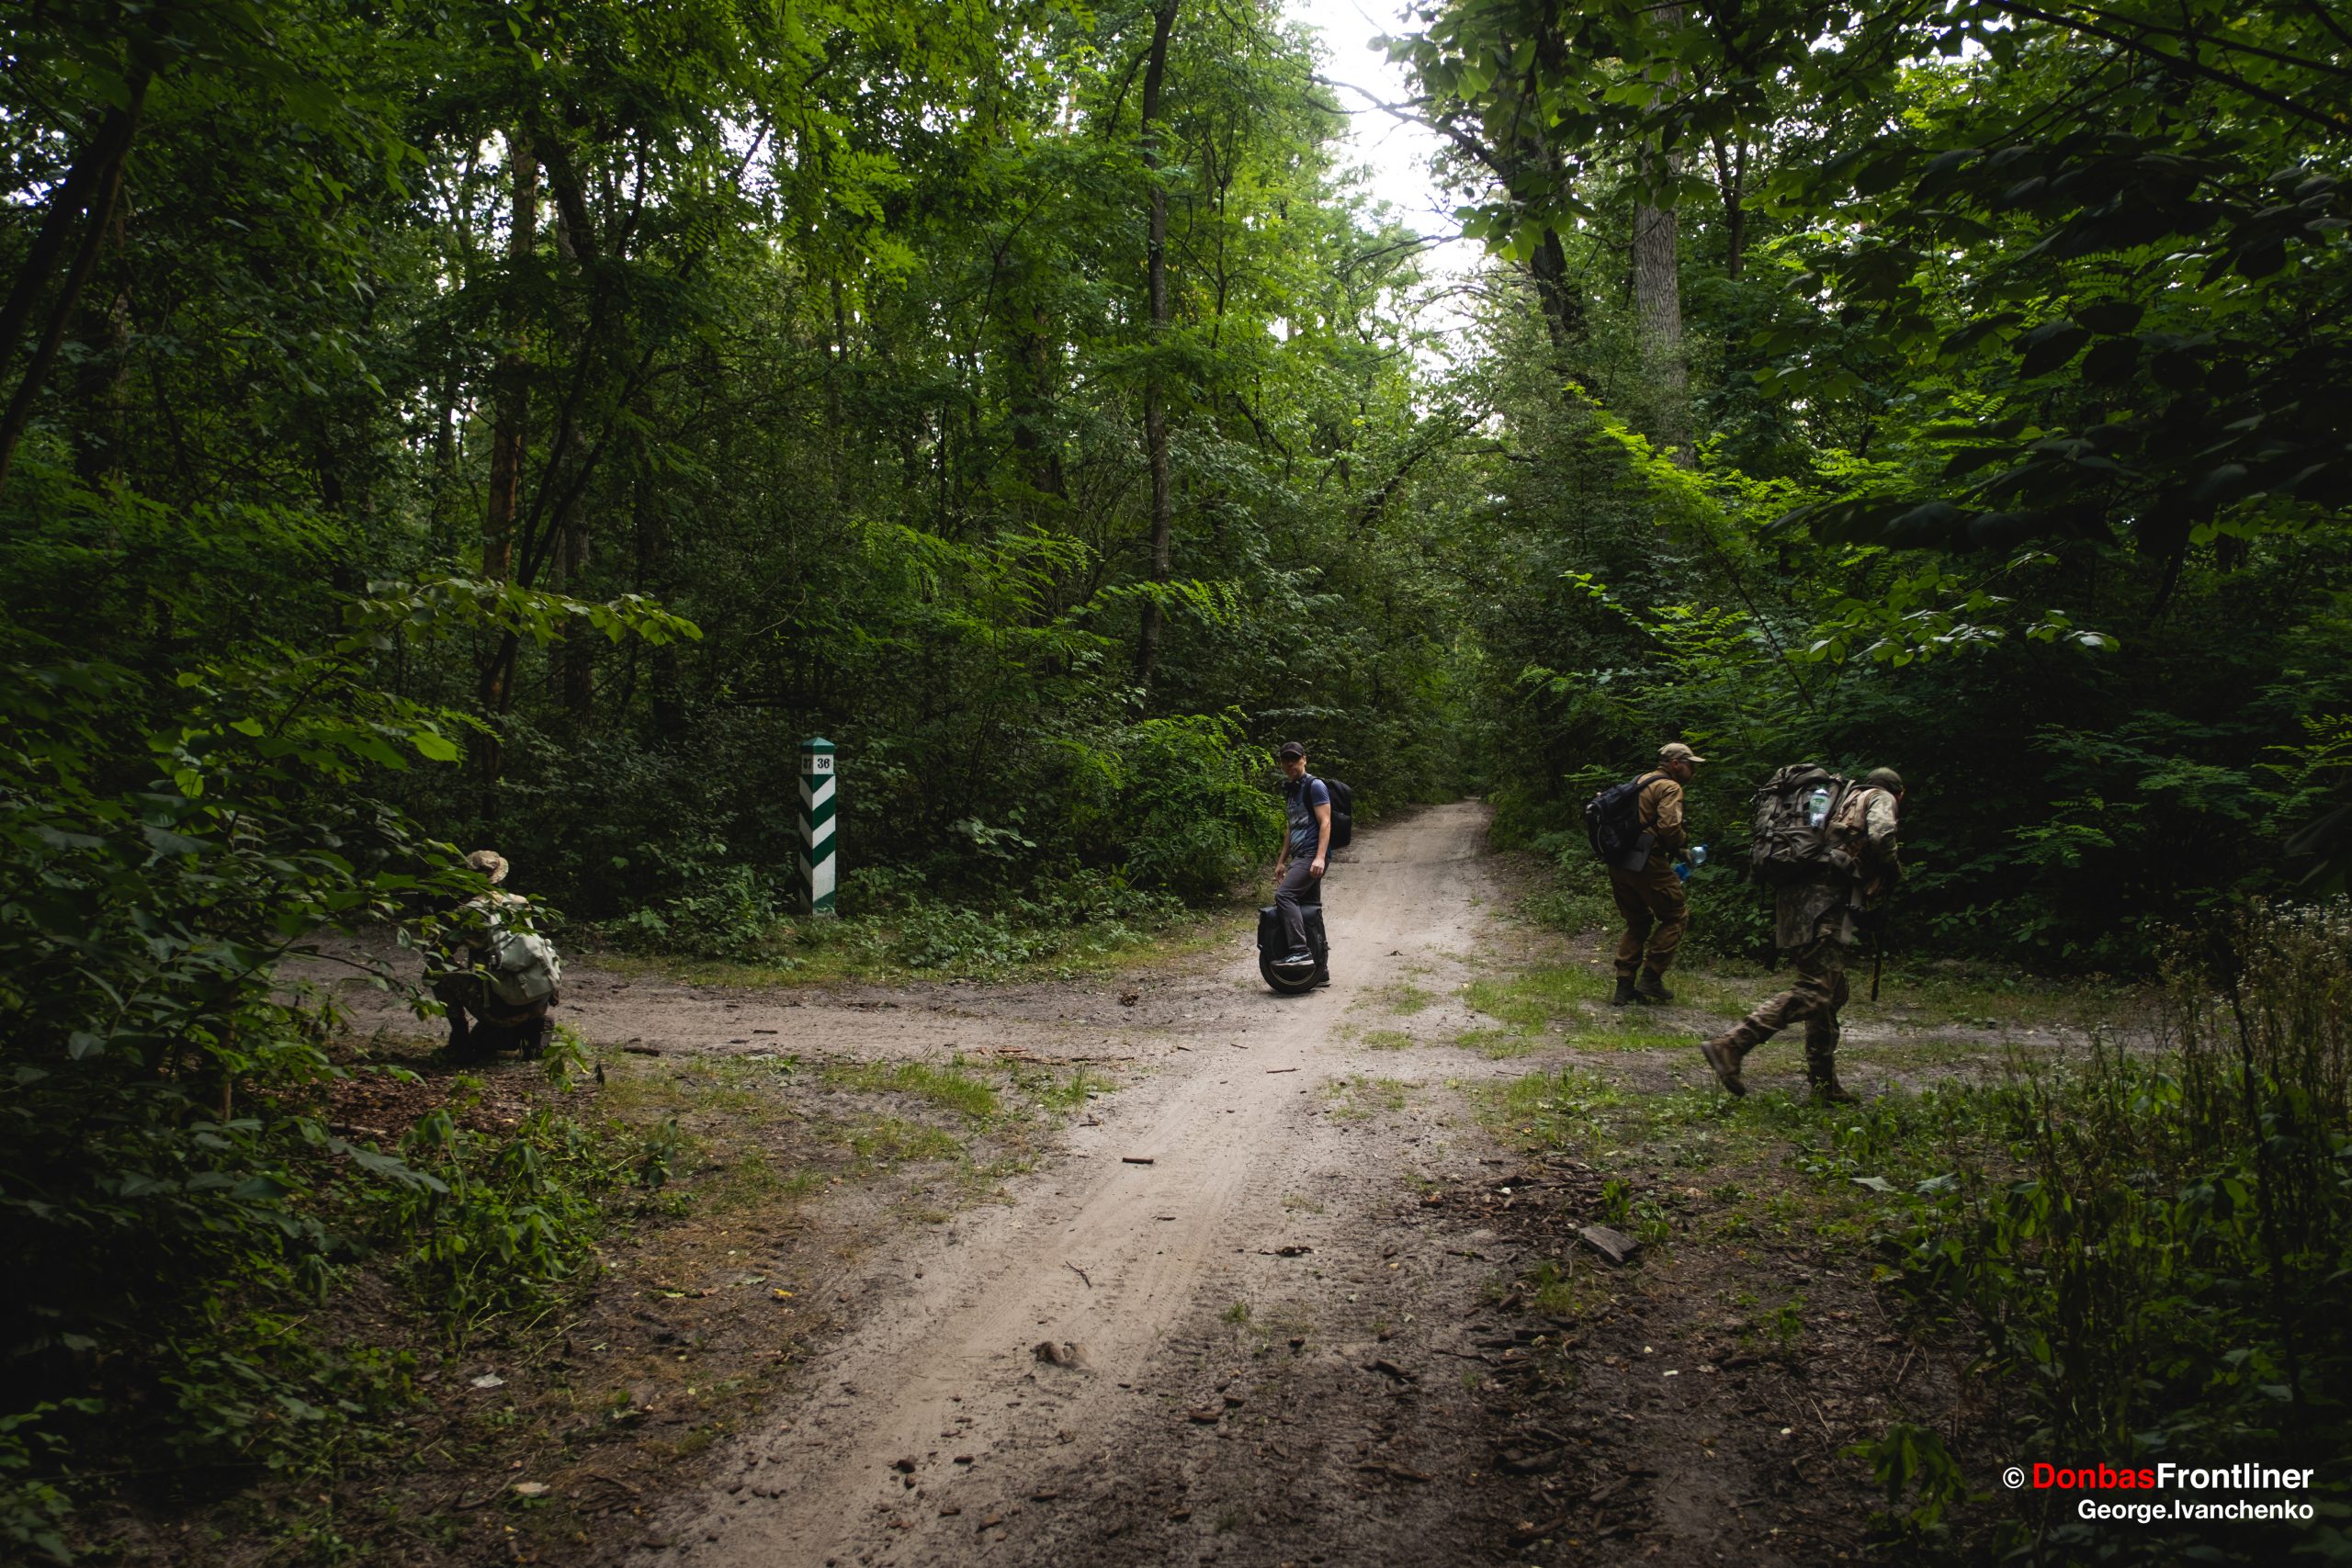 Donbas Frontliner / Орієнтування на місцевості